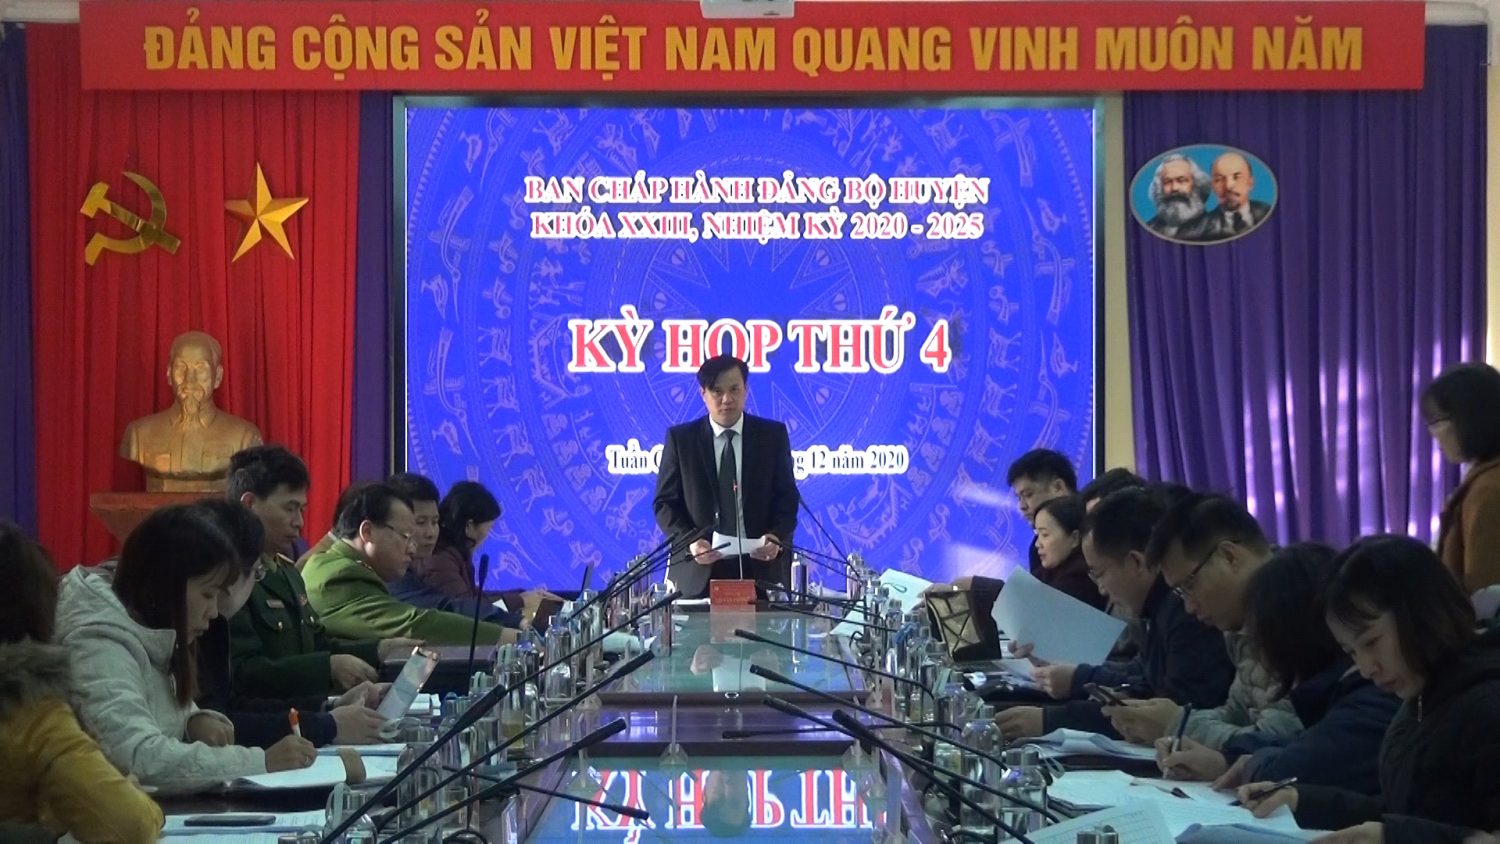 Kỳ họp thứ 4, BCH Đảng bộ huyện Tuần Giáo khóa XXIII, NK 2020 – 2025